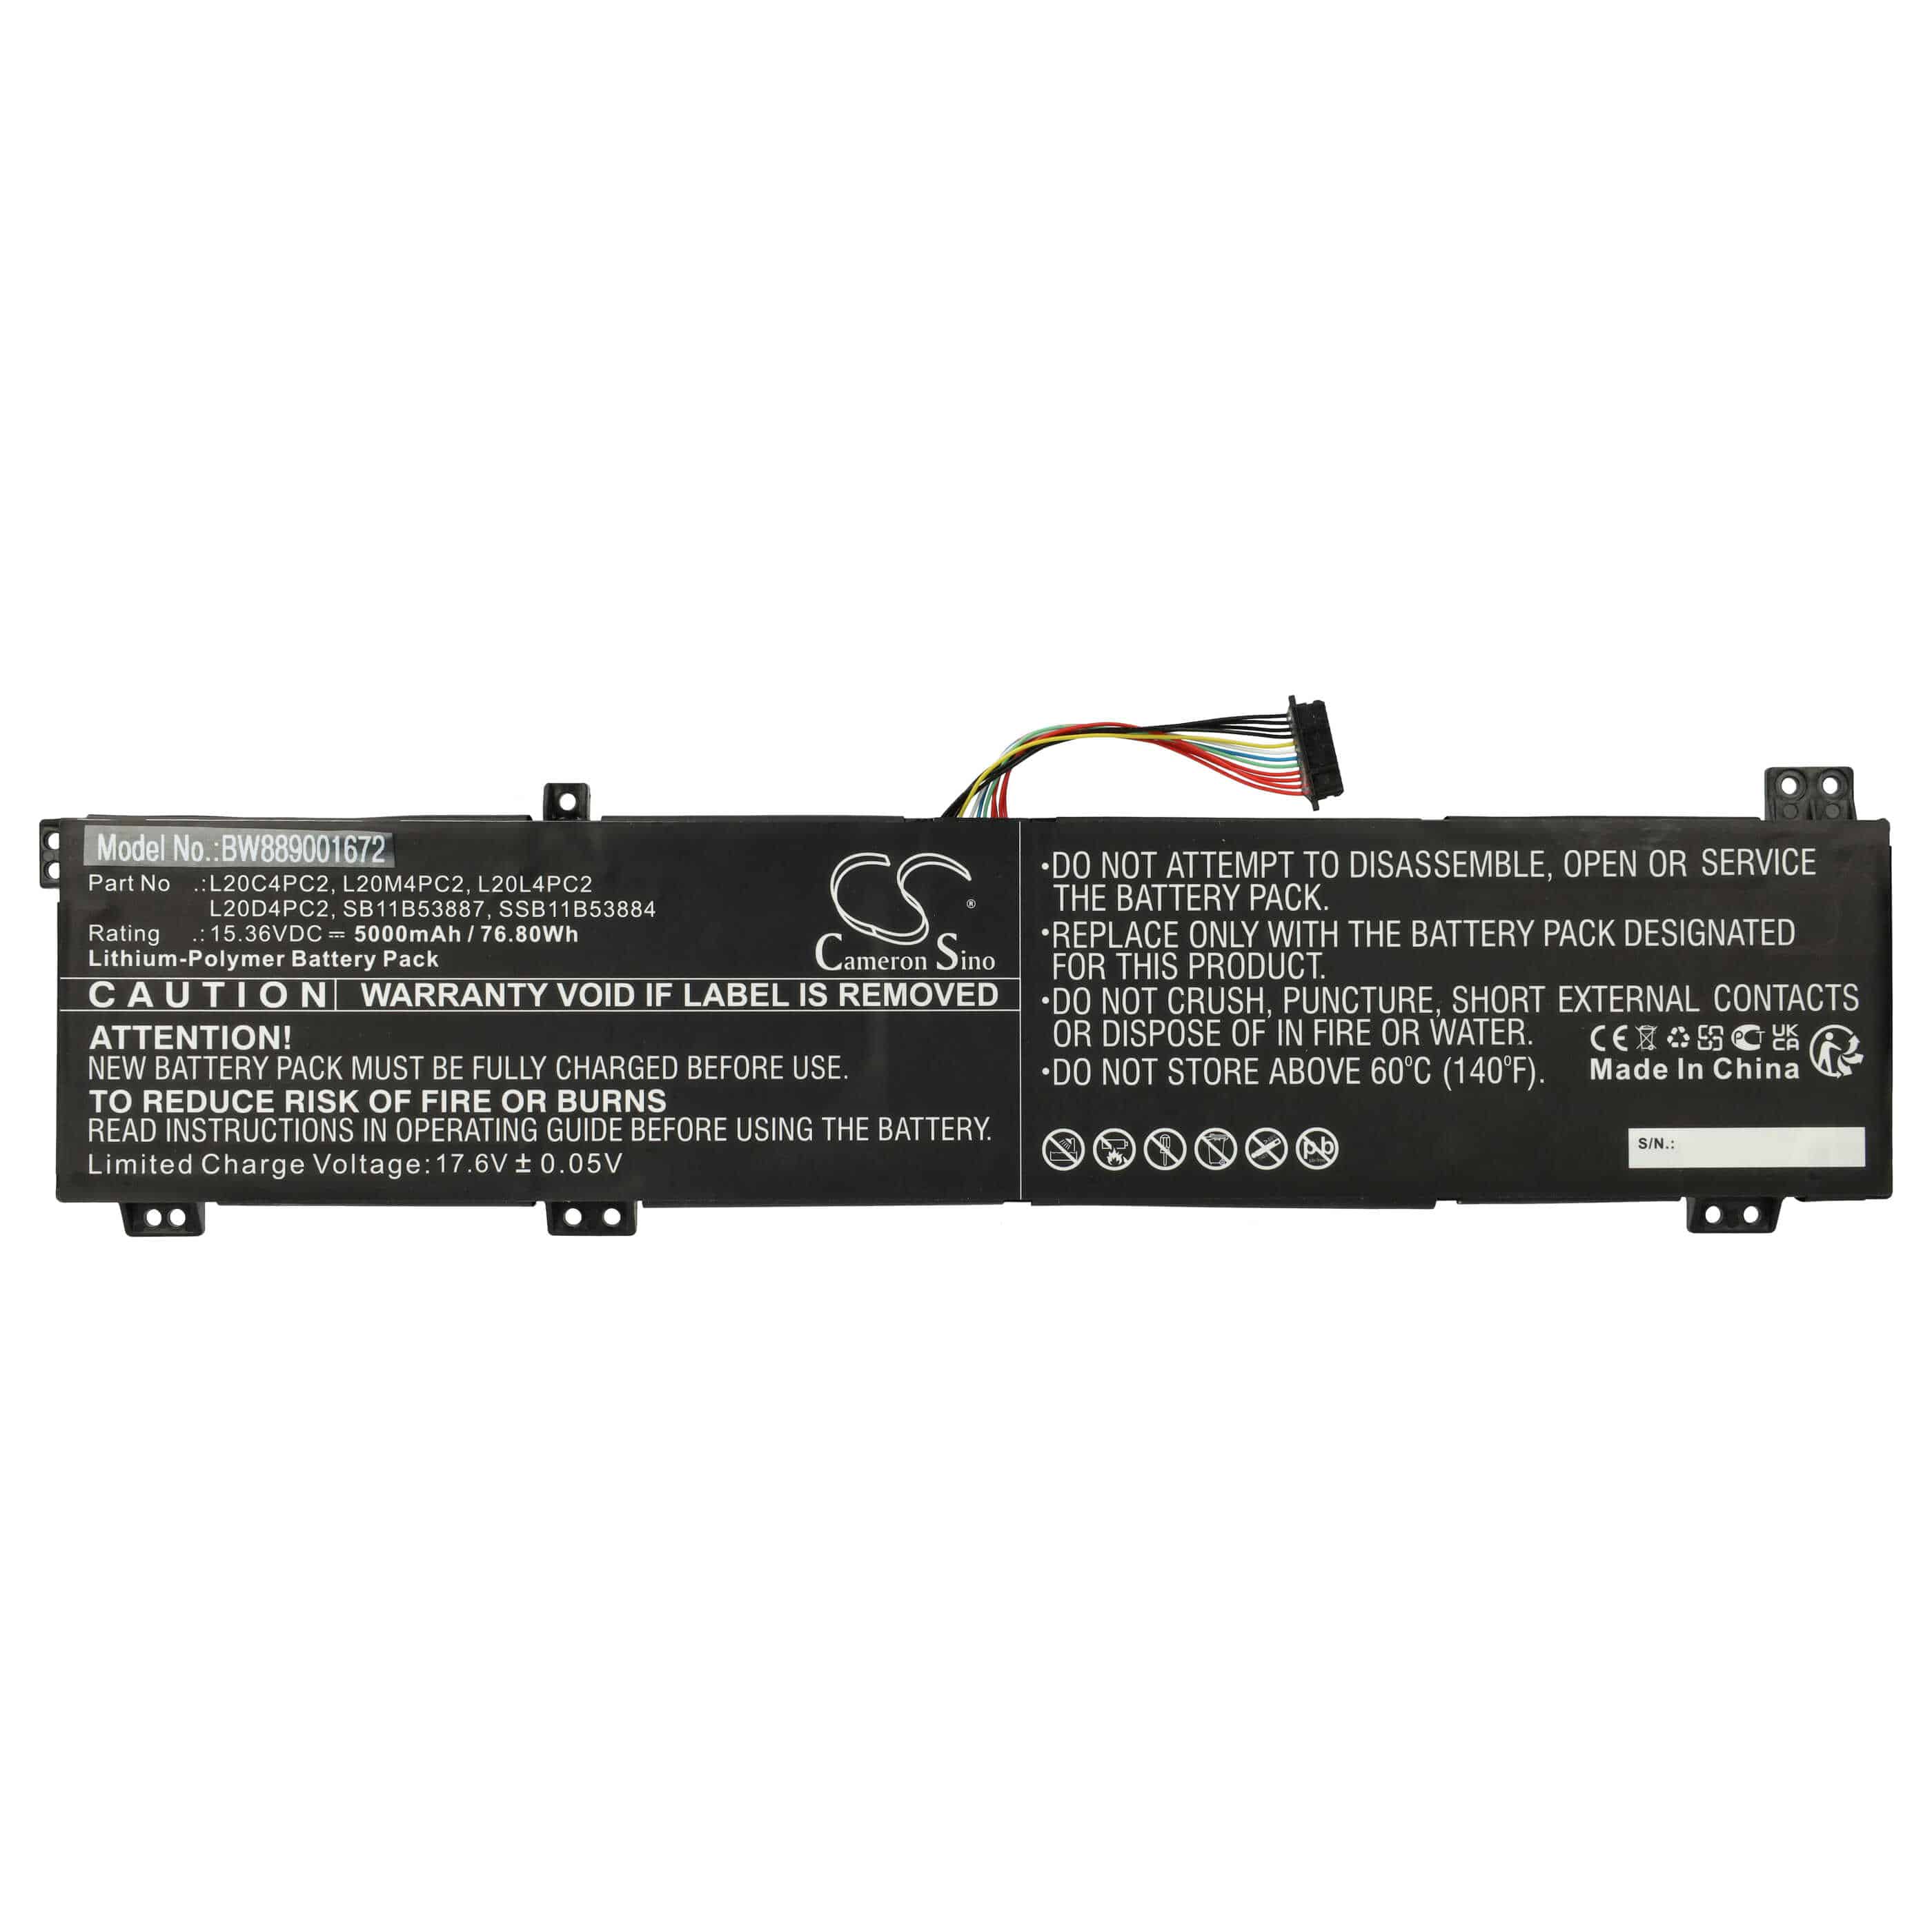 Batterie remplace Lenovo L20C4PC2, L20D4PC2, L20L4PC2 pour ordinateur portable - 5000mAh 15,36V Li-polymère